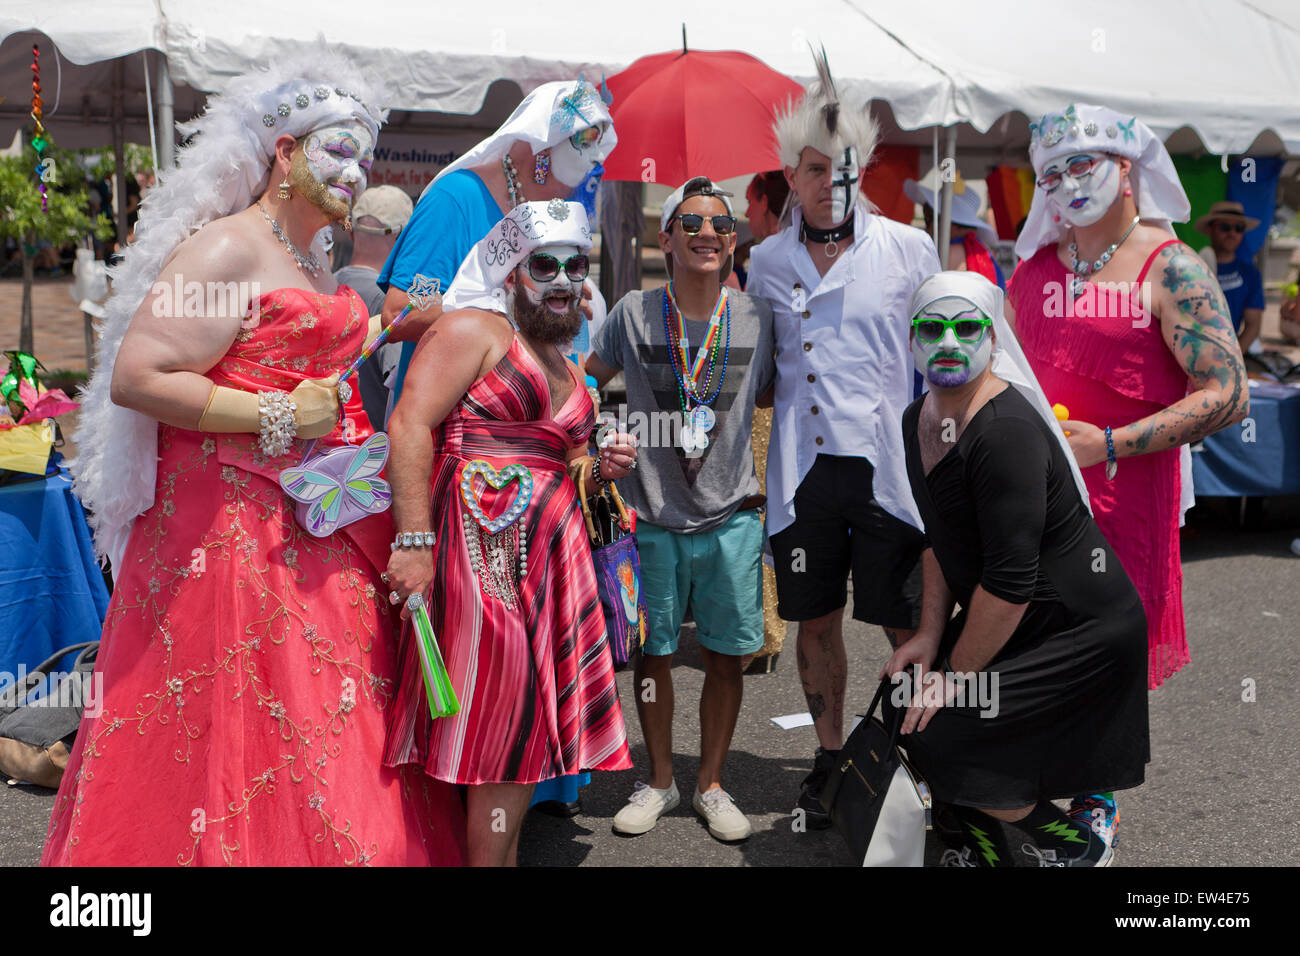 Hombres vestidos de arrastre en Capital Pride Festival 2015 - Washington, DC, EE.UU. Foto de stock